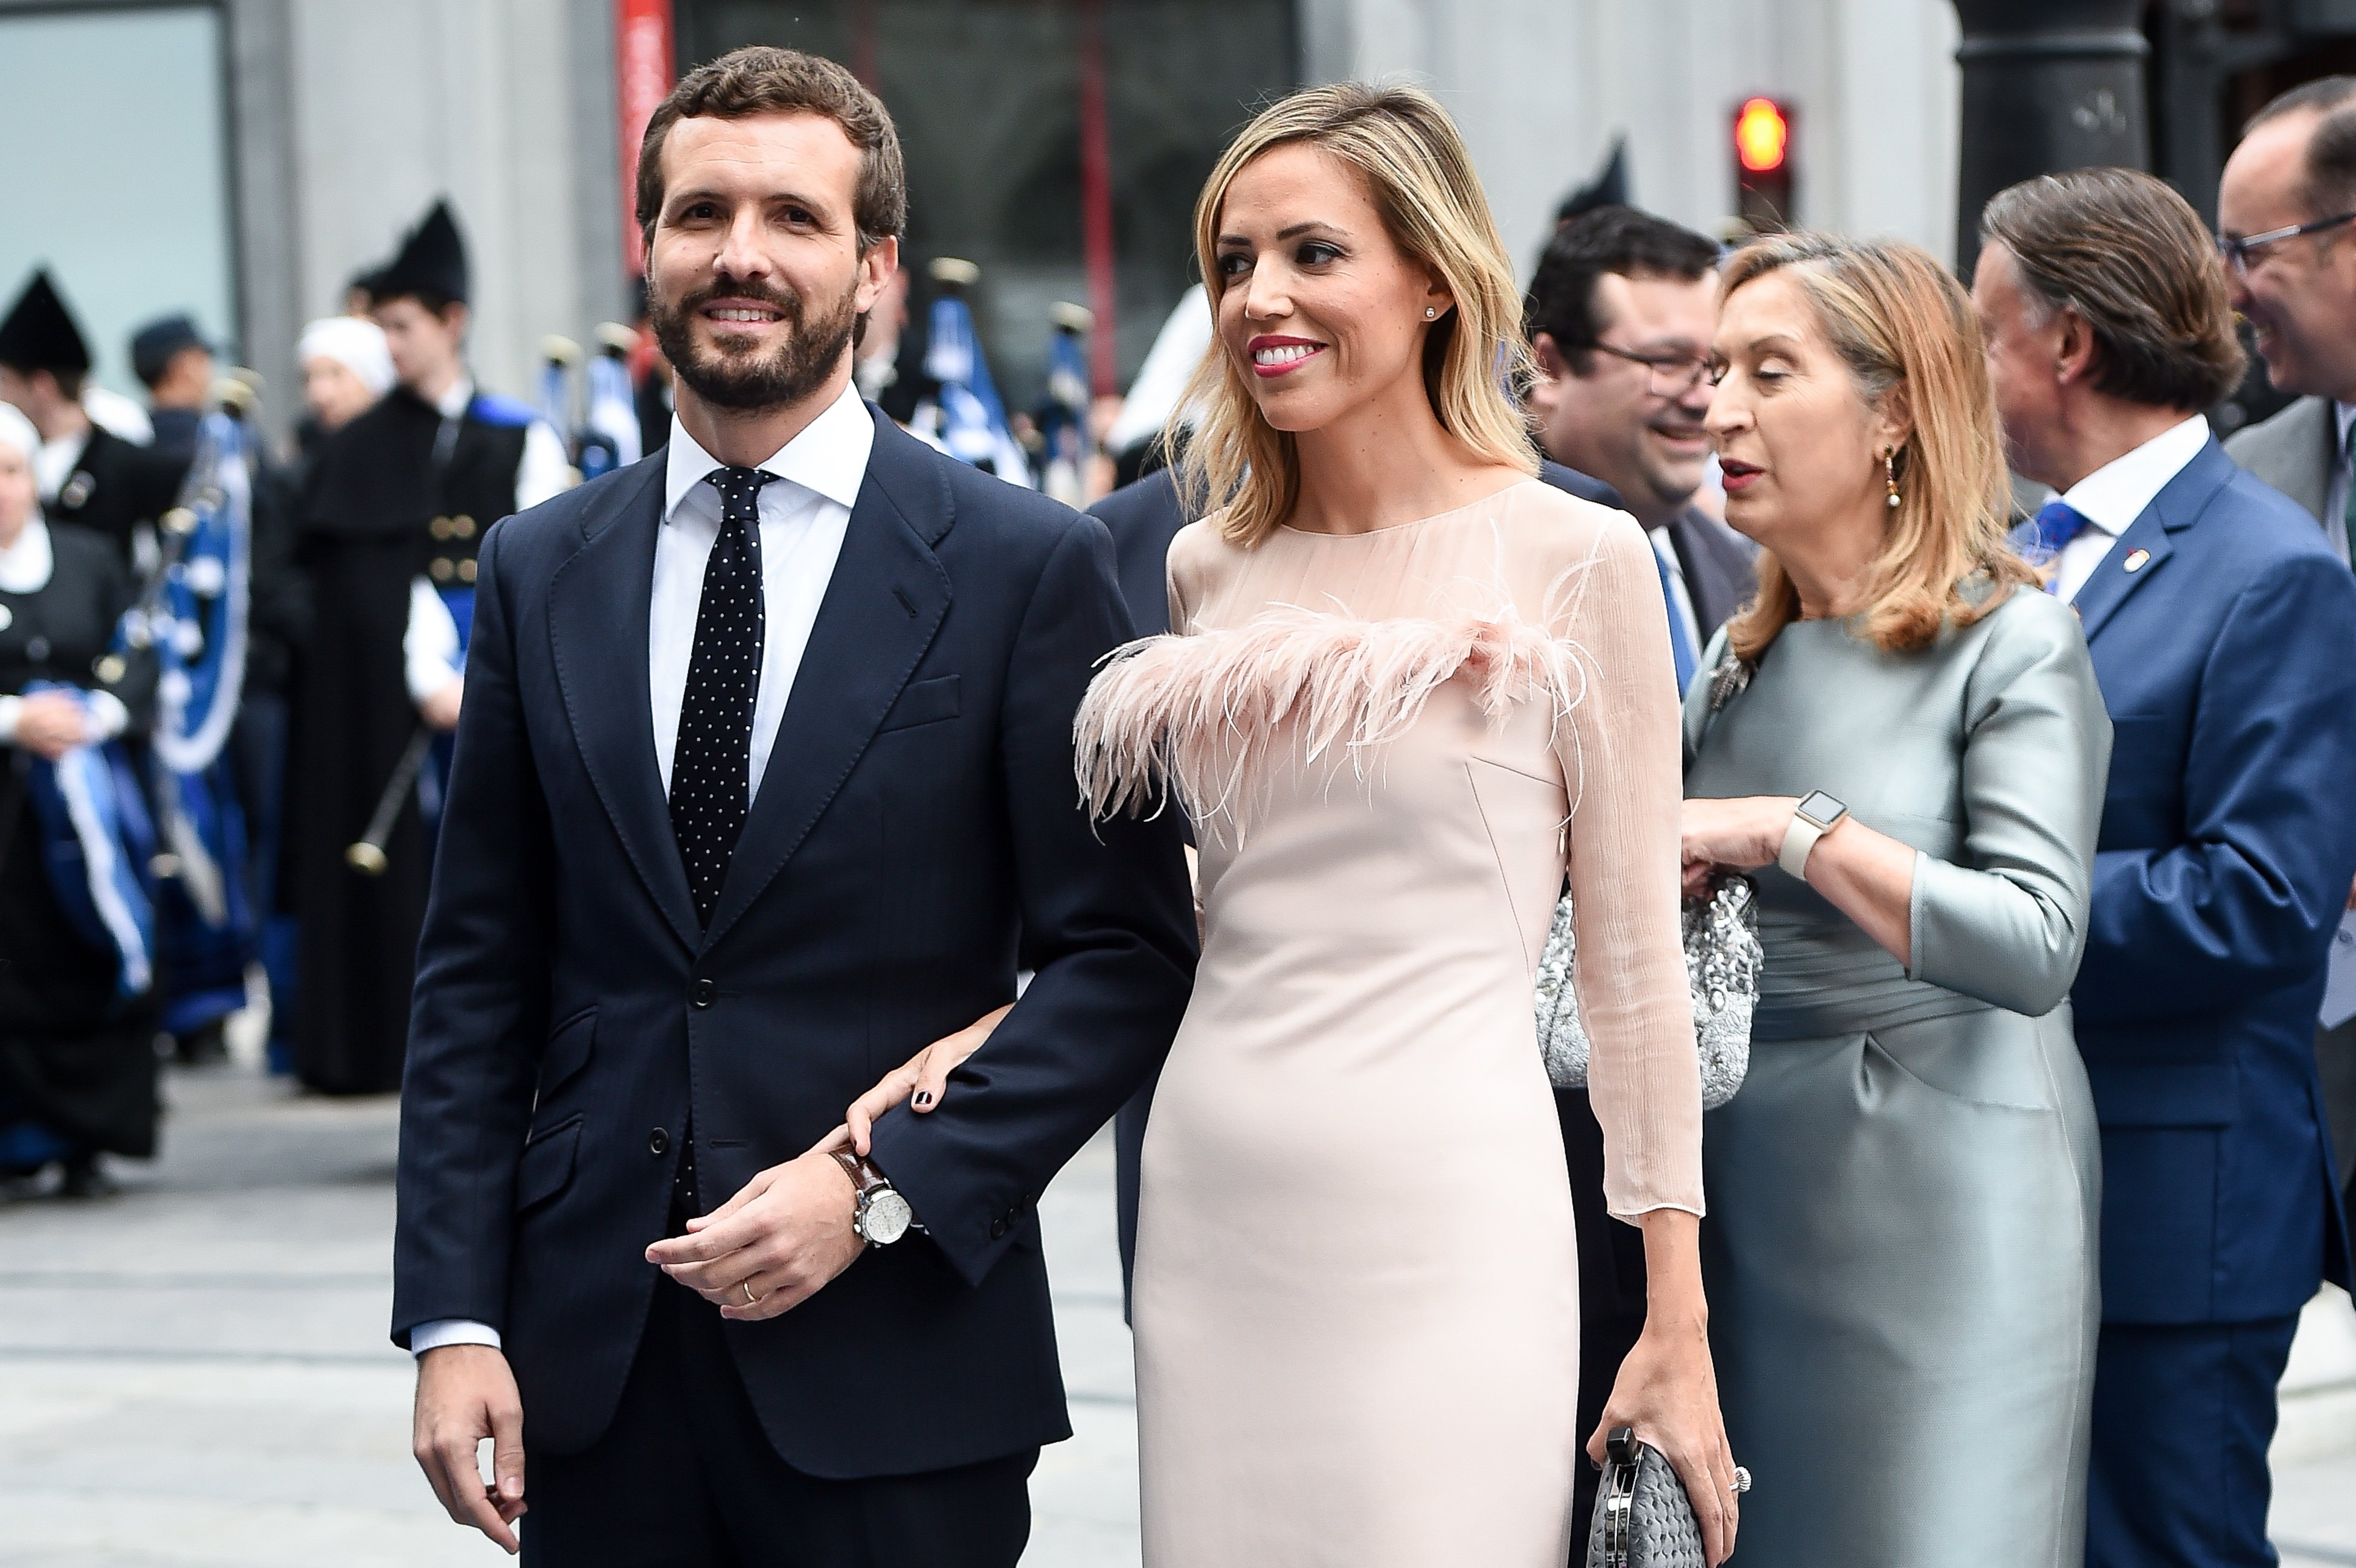 Pablo Casado e Isabel Torres en los Premios Princesa de Asturias 2019, en Oviedo, España. | Foto: Getty Images